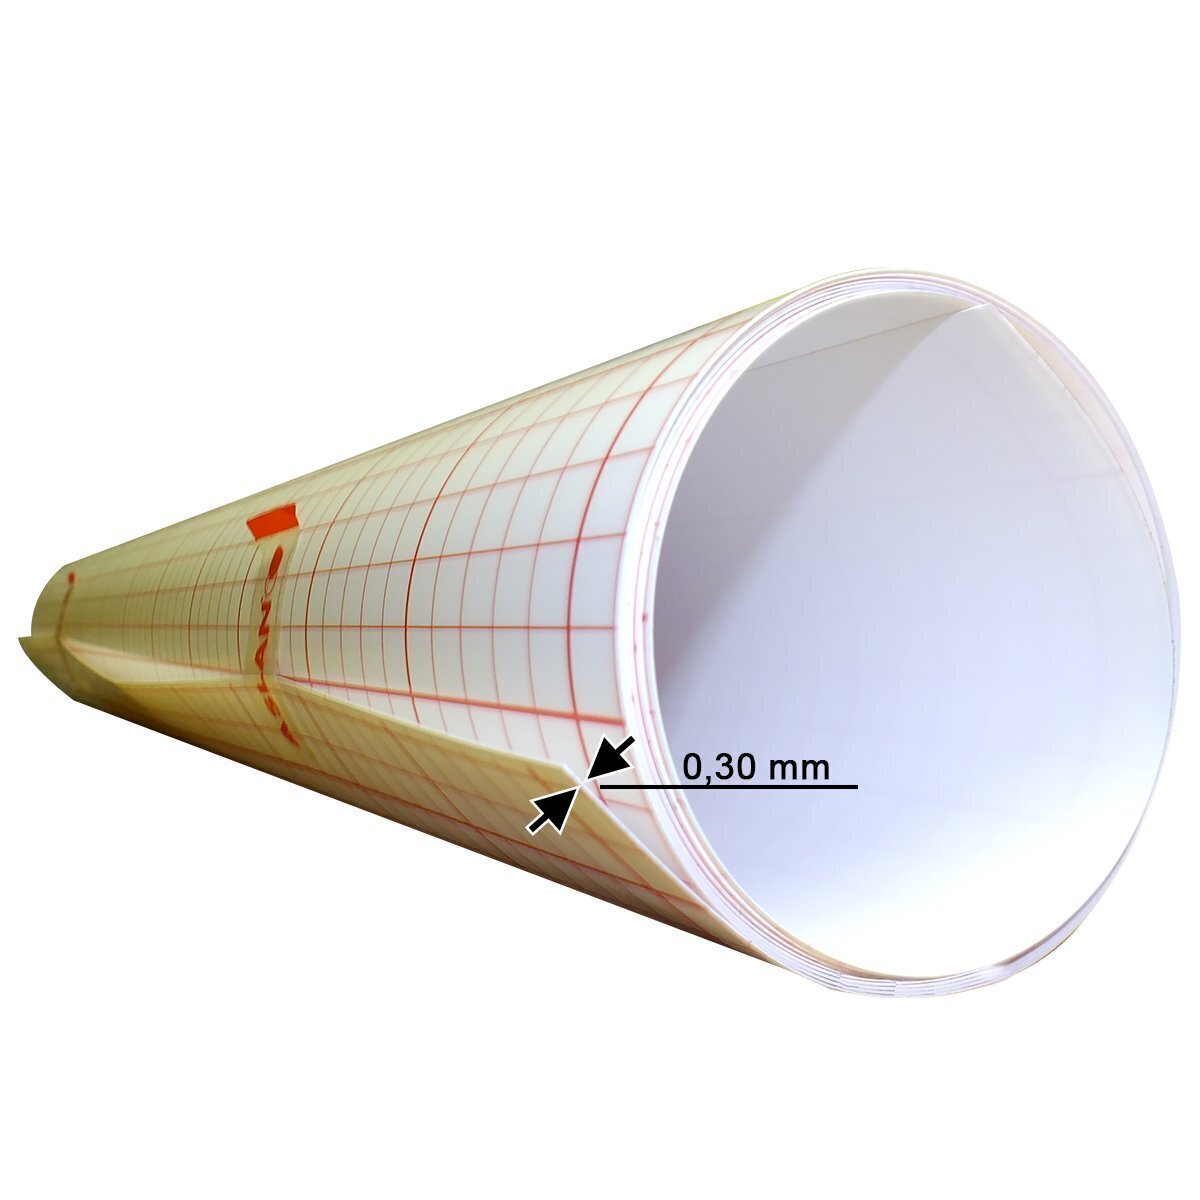 Selbstklebefolie für Lichterketten 0,30 mm, 1 m x 60 cm